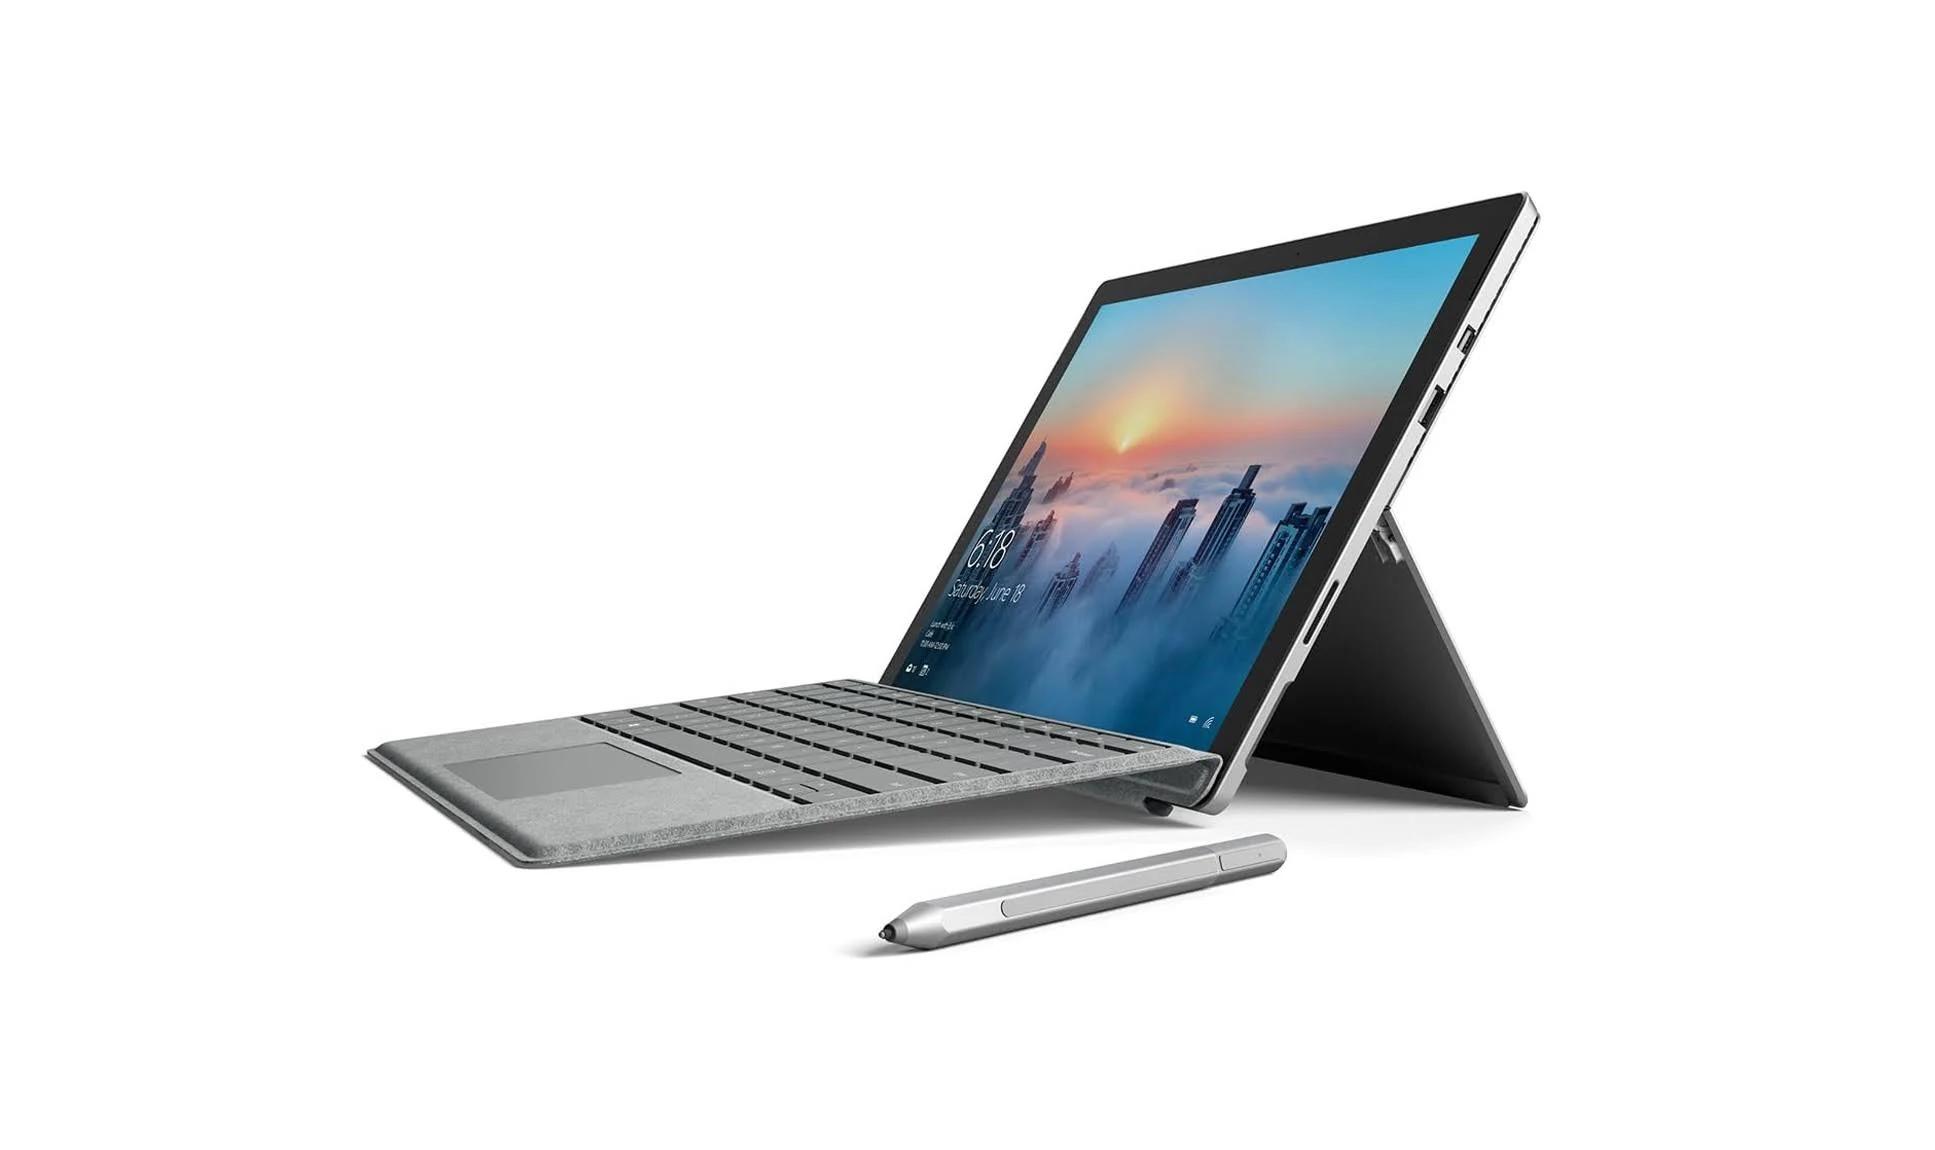 لابتوب مايكروسوفت سيرفس برو 4 مستعمل مع معالج كور اي 5 الجيل السادس ورام 4 جيجابايت وذاكرة 128 جيجابايت بدون كيبورد فضي مايكروسوفت Pre-owned Microsoft Surface Pro 4 2015 Without Keyboard